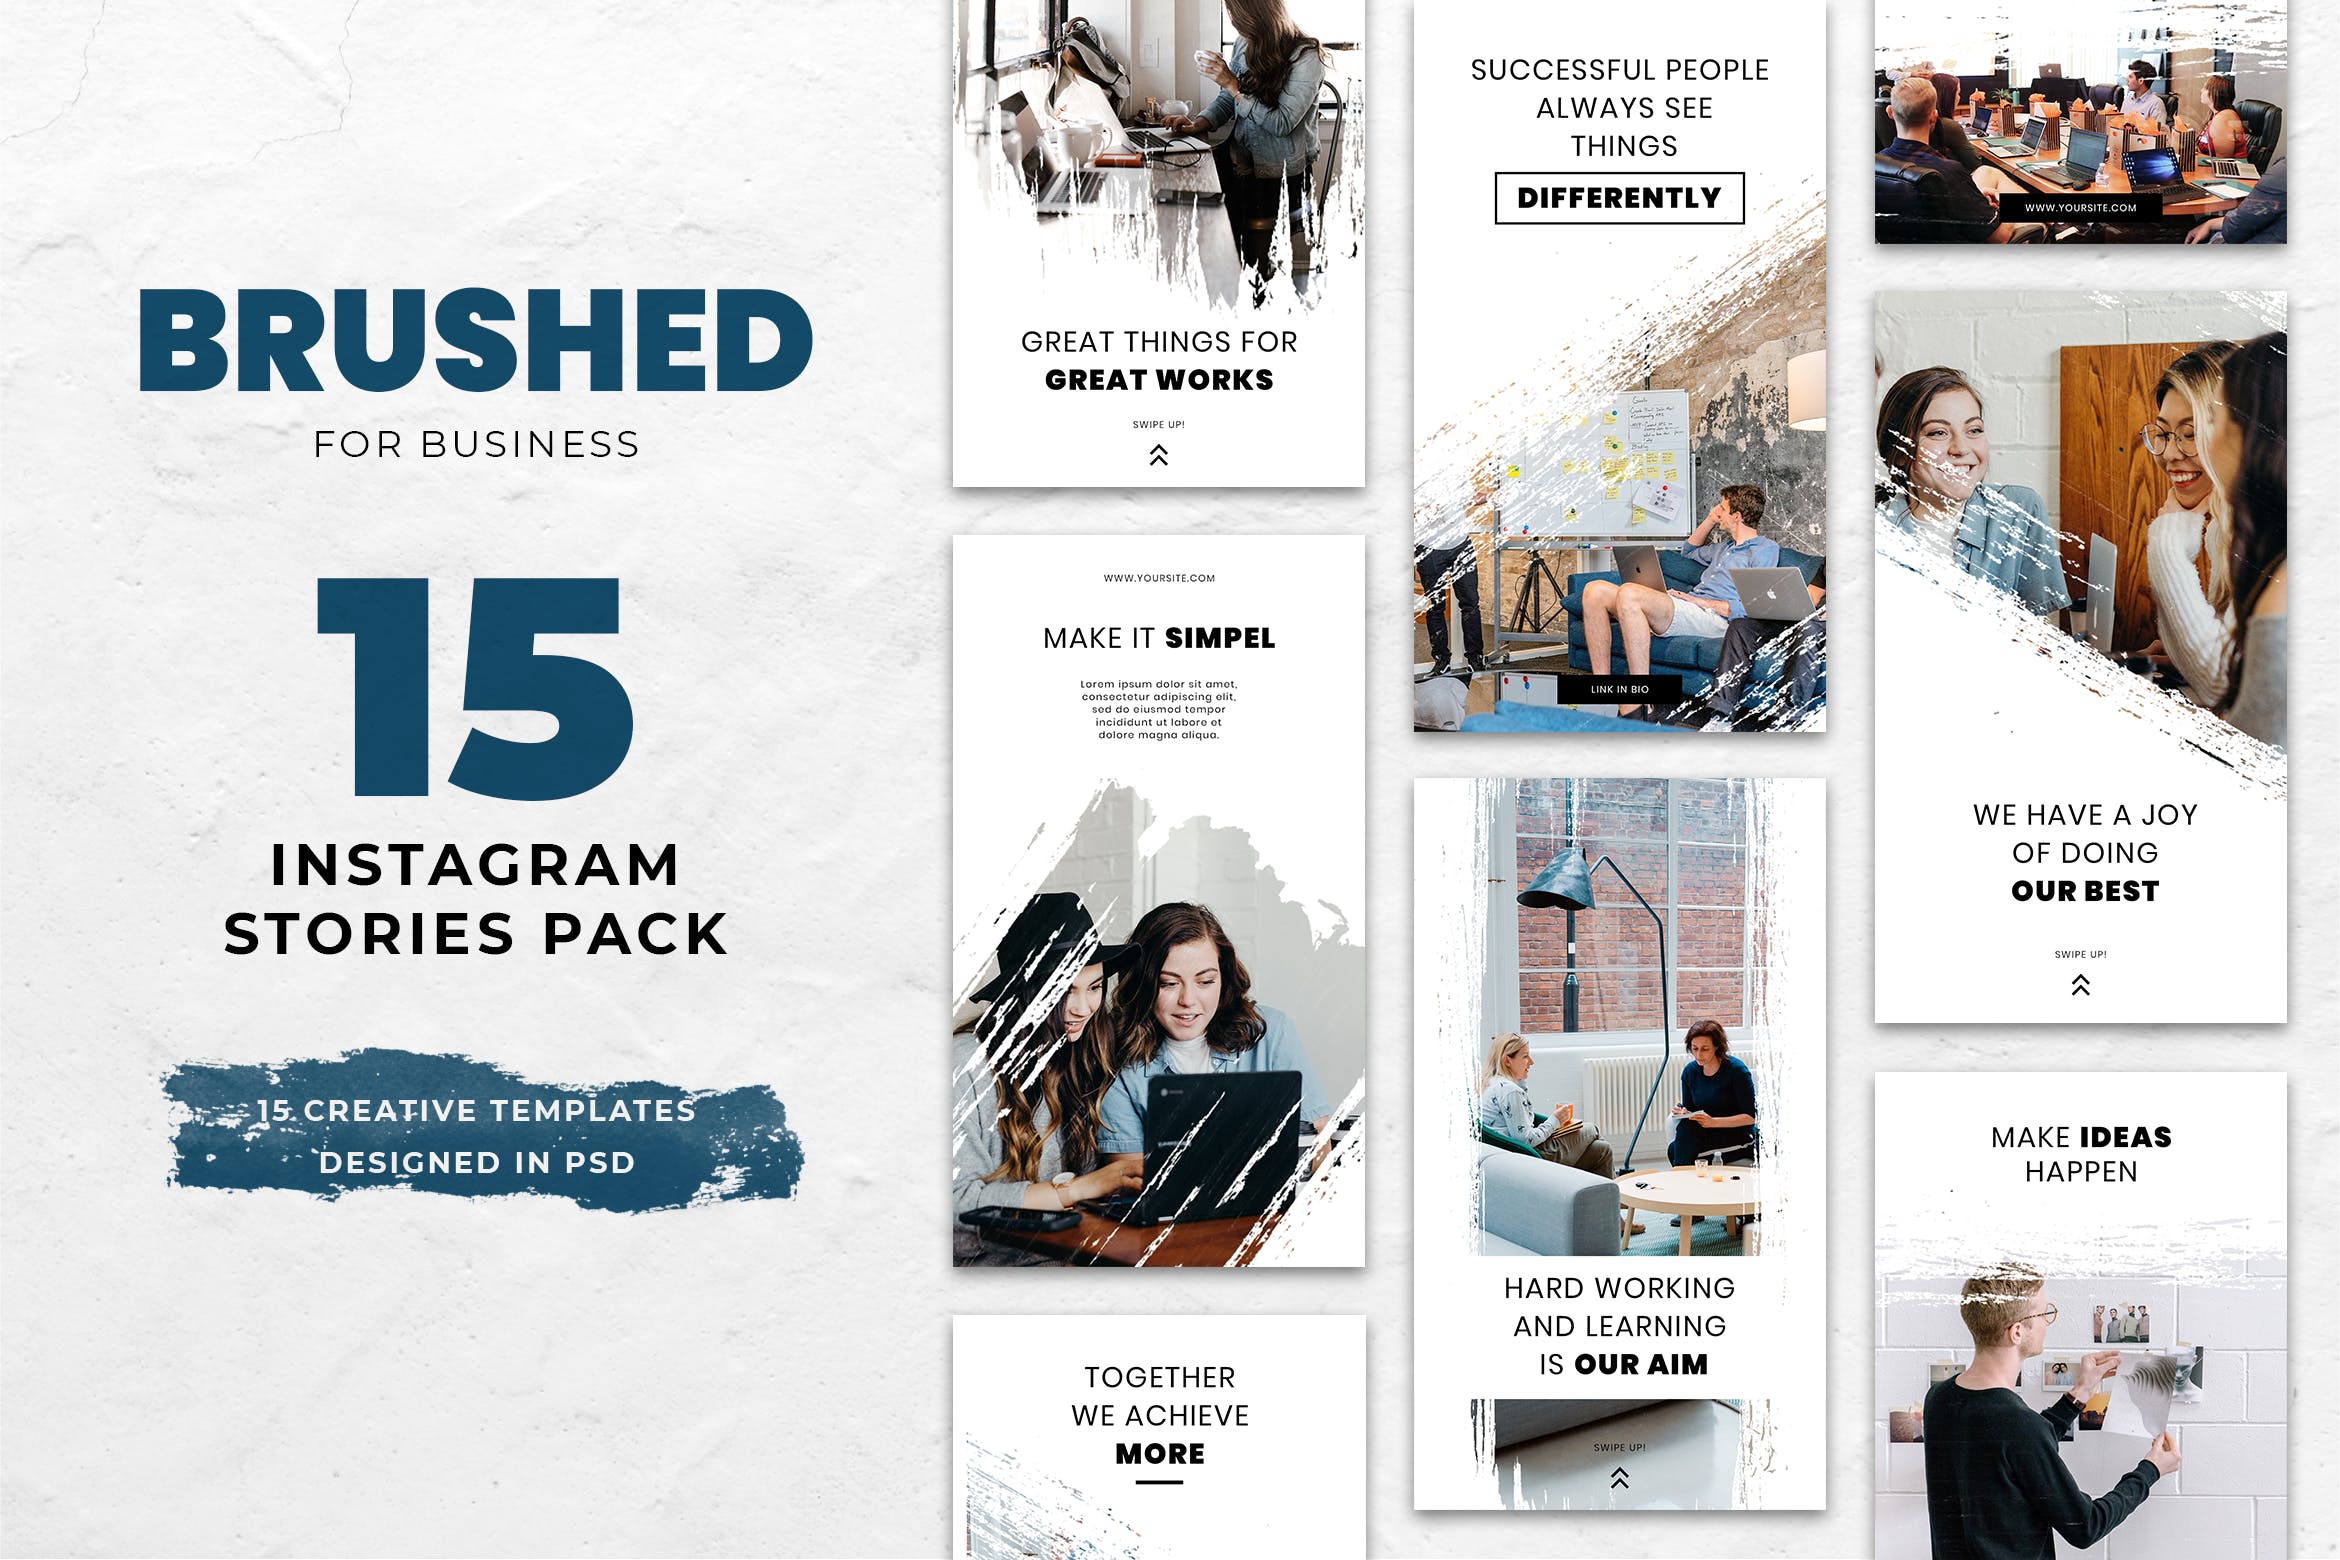 企业团队/工作室/小组Instagram社交宣传水彩风格设计素材 Business Brush Instagram Stories插图